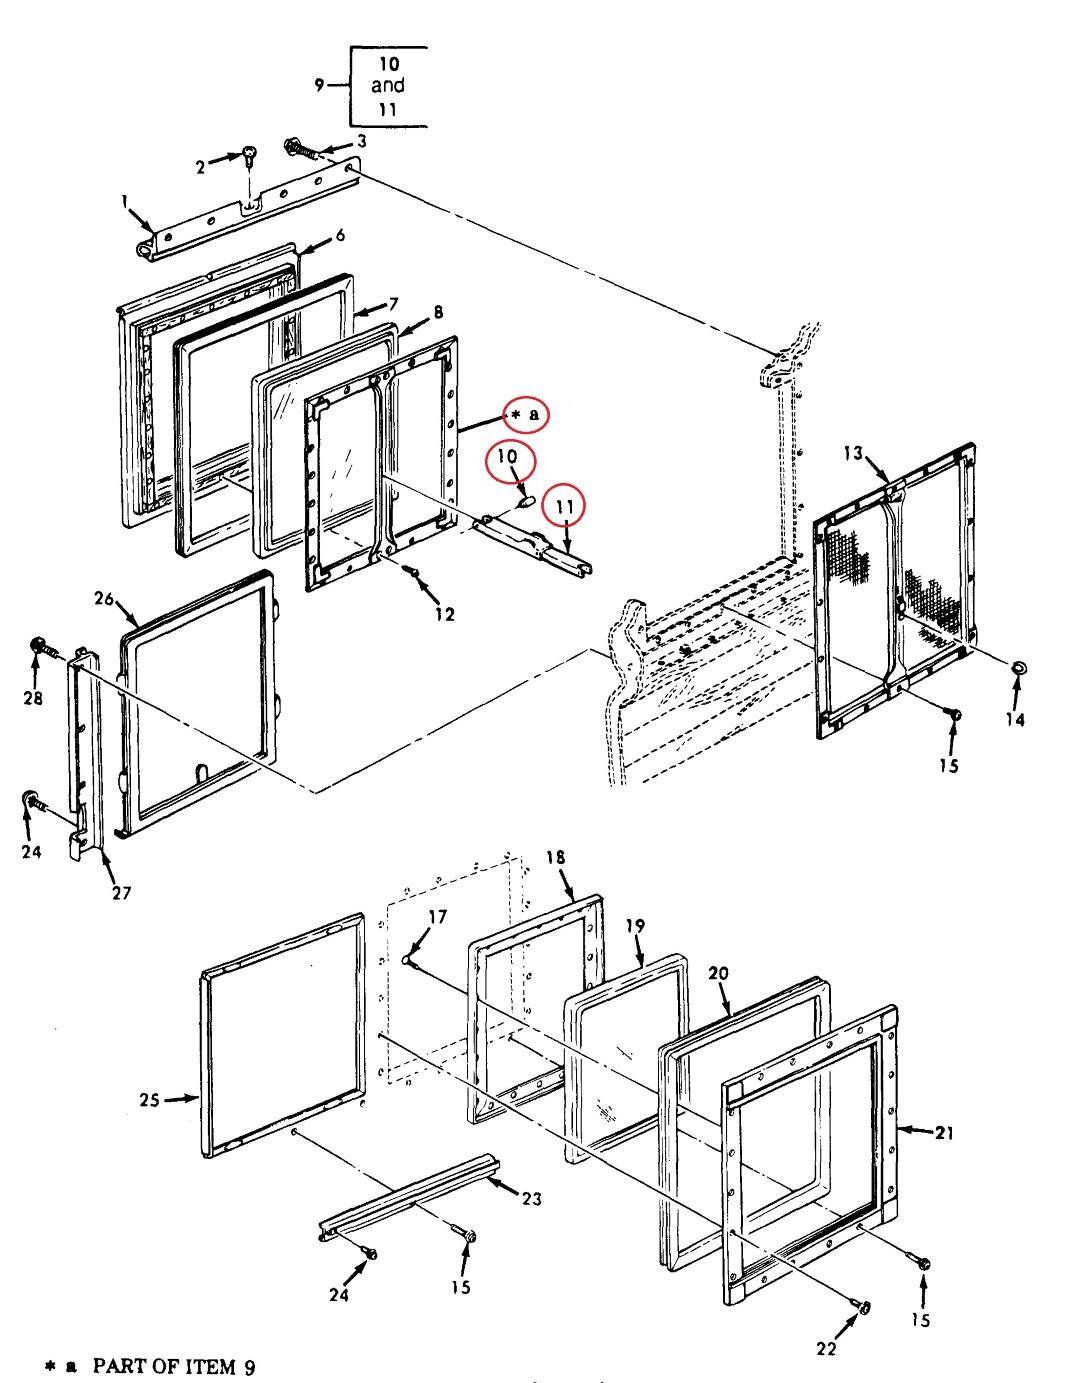 M35-702 | M35-702 Van Body Window Frame Parts Diagram (Large).jpg